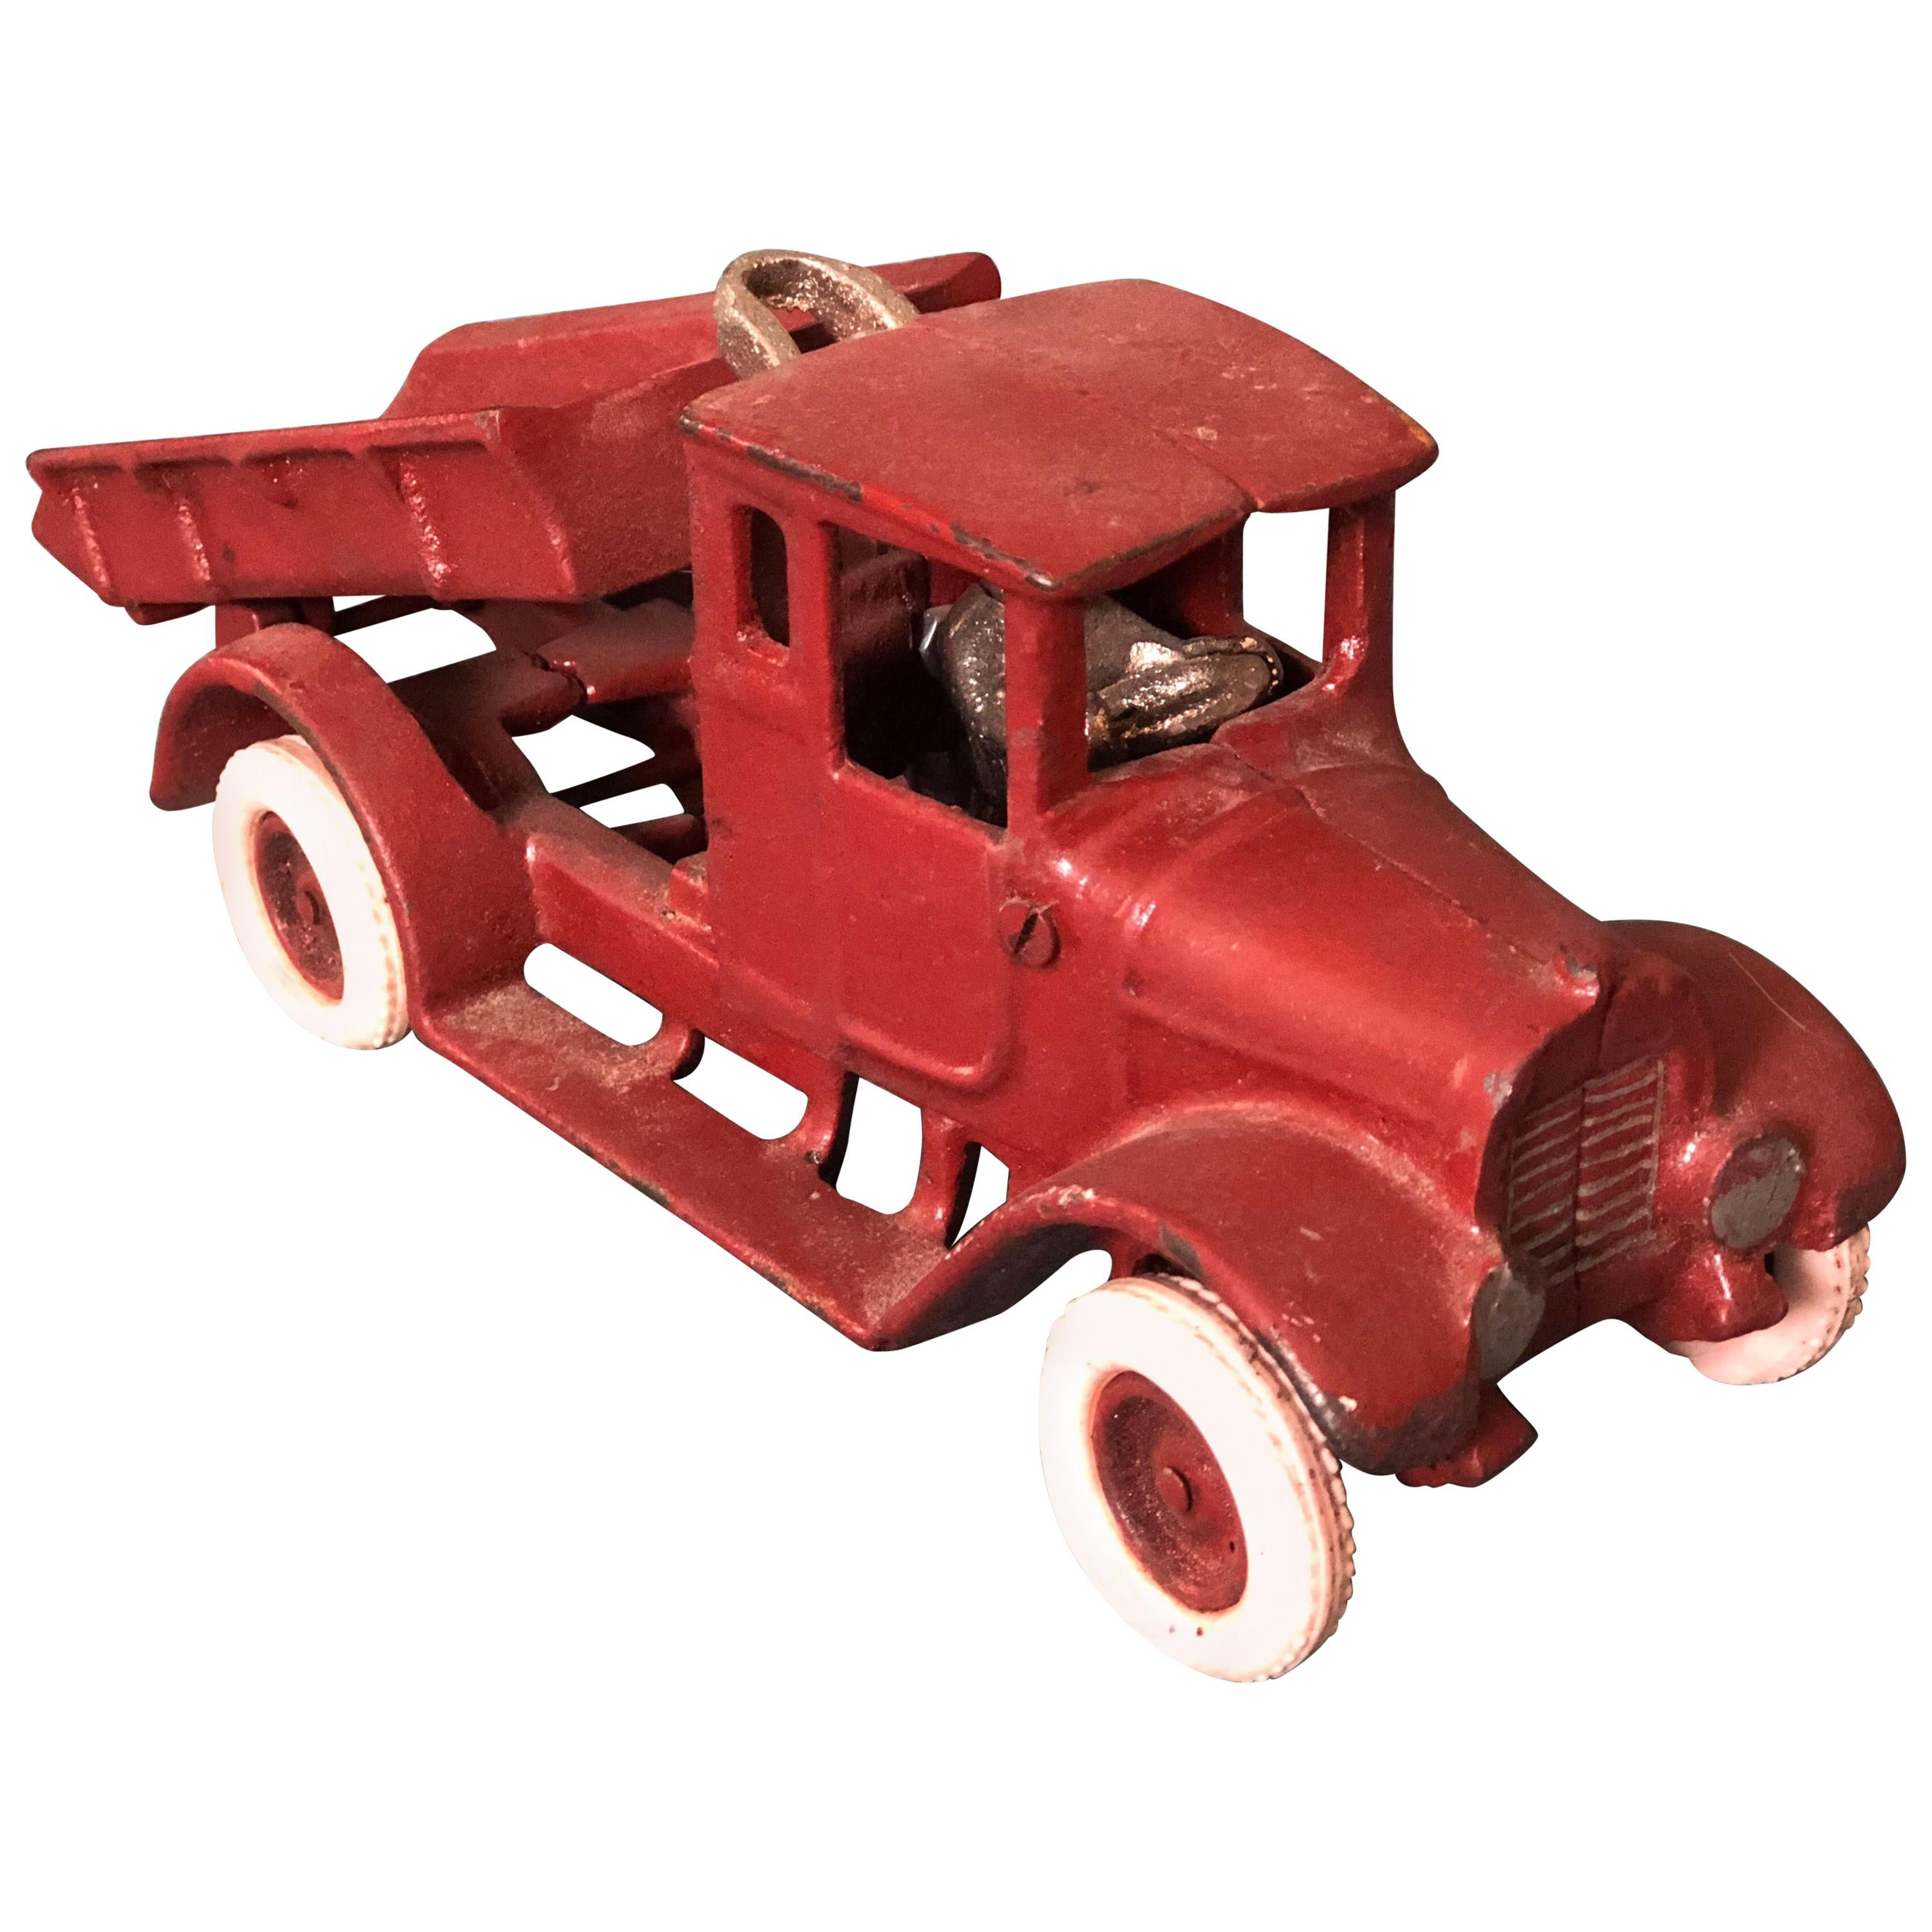 Modèle français du 20e siècle représentant un chevalet Lorry rouge